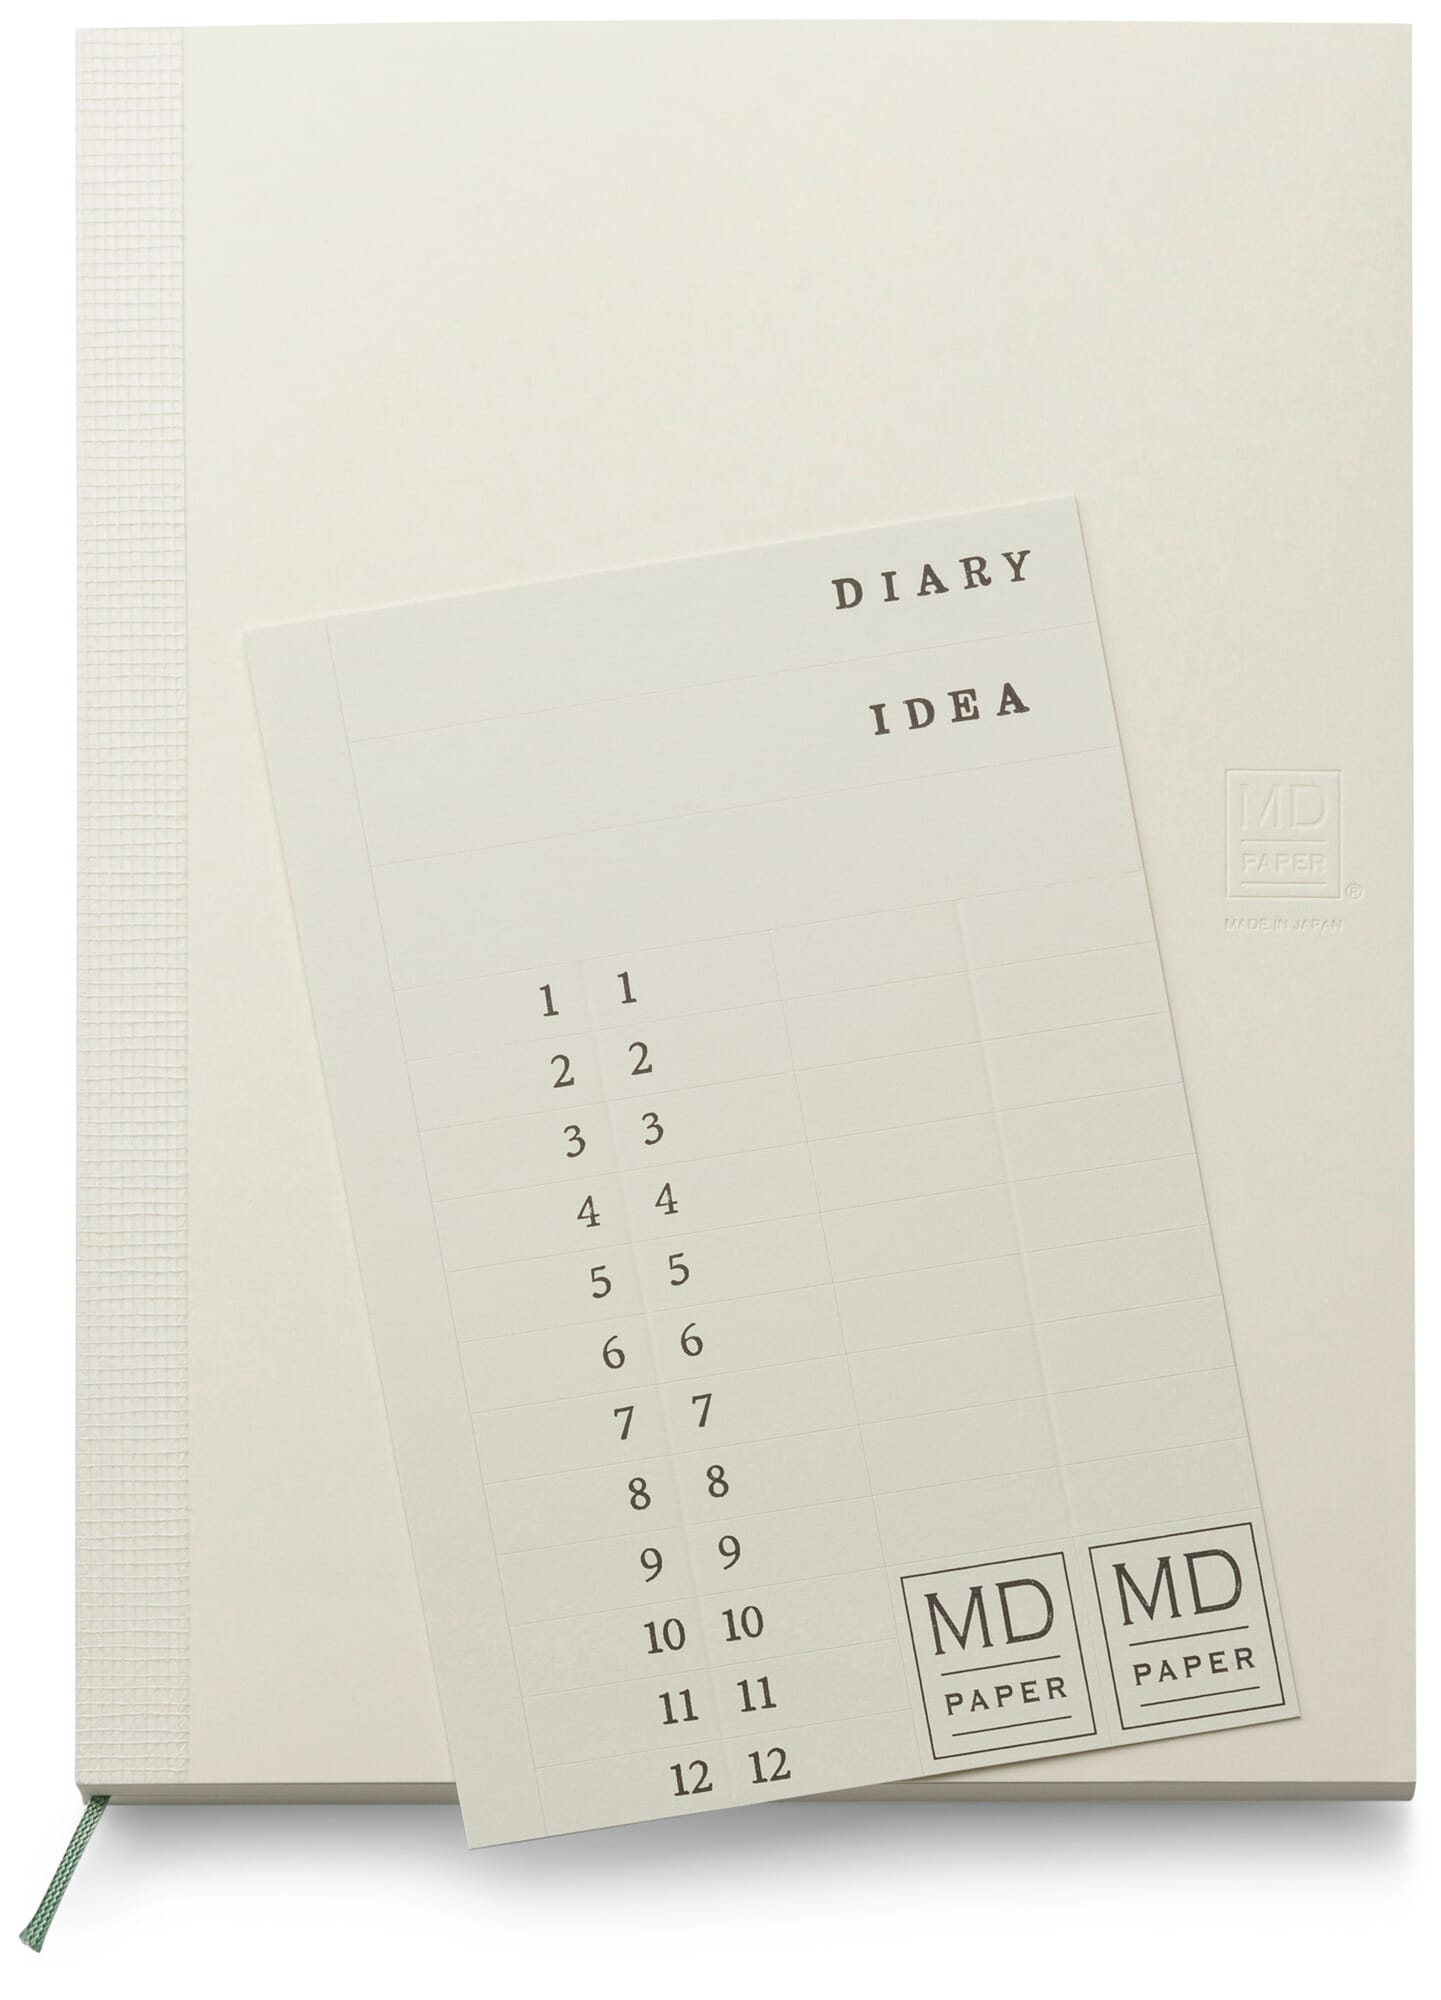 Midori MD Notebook, A5